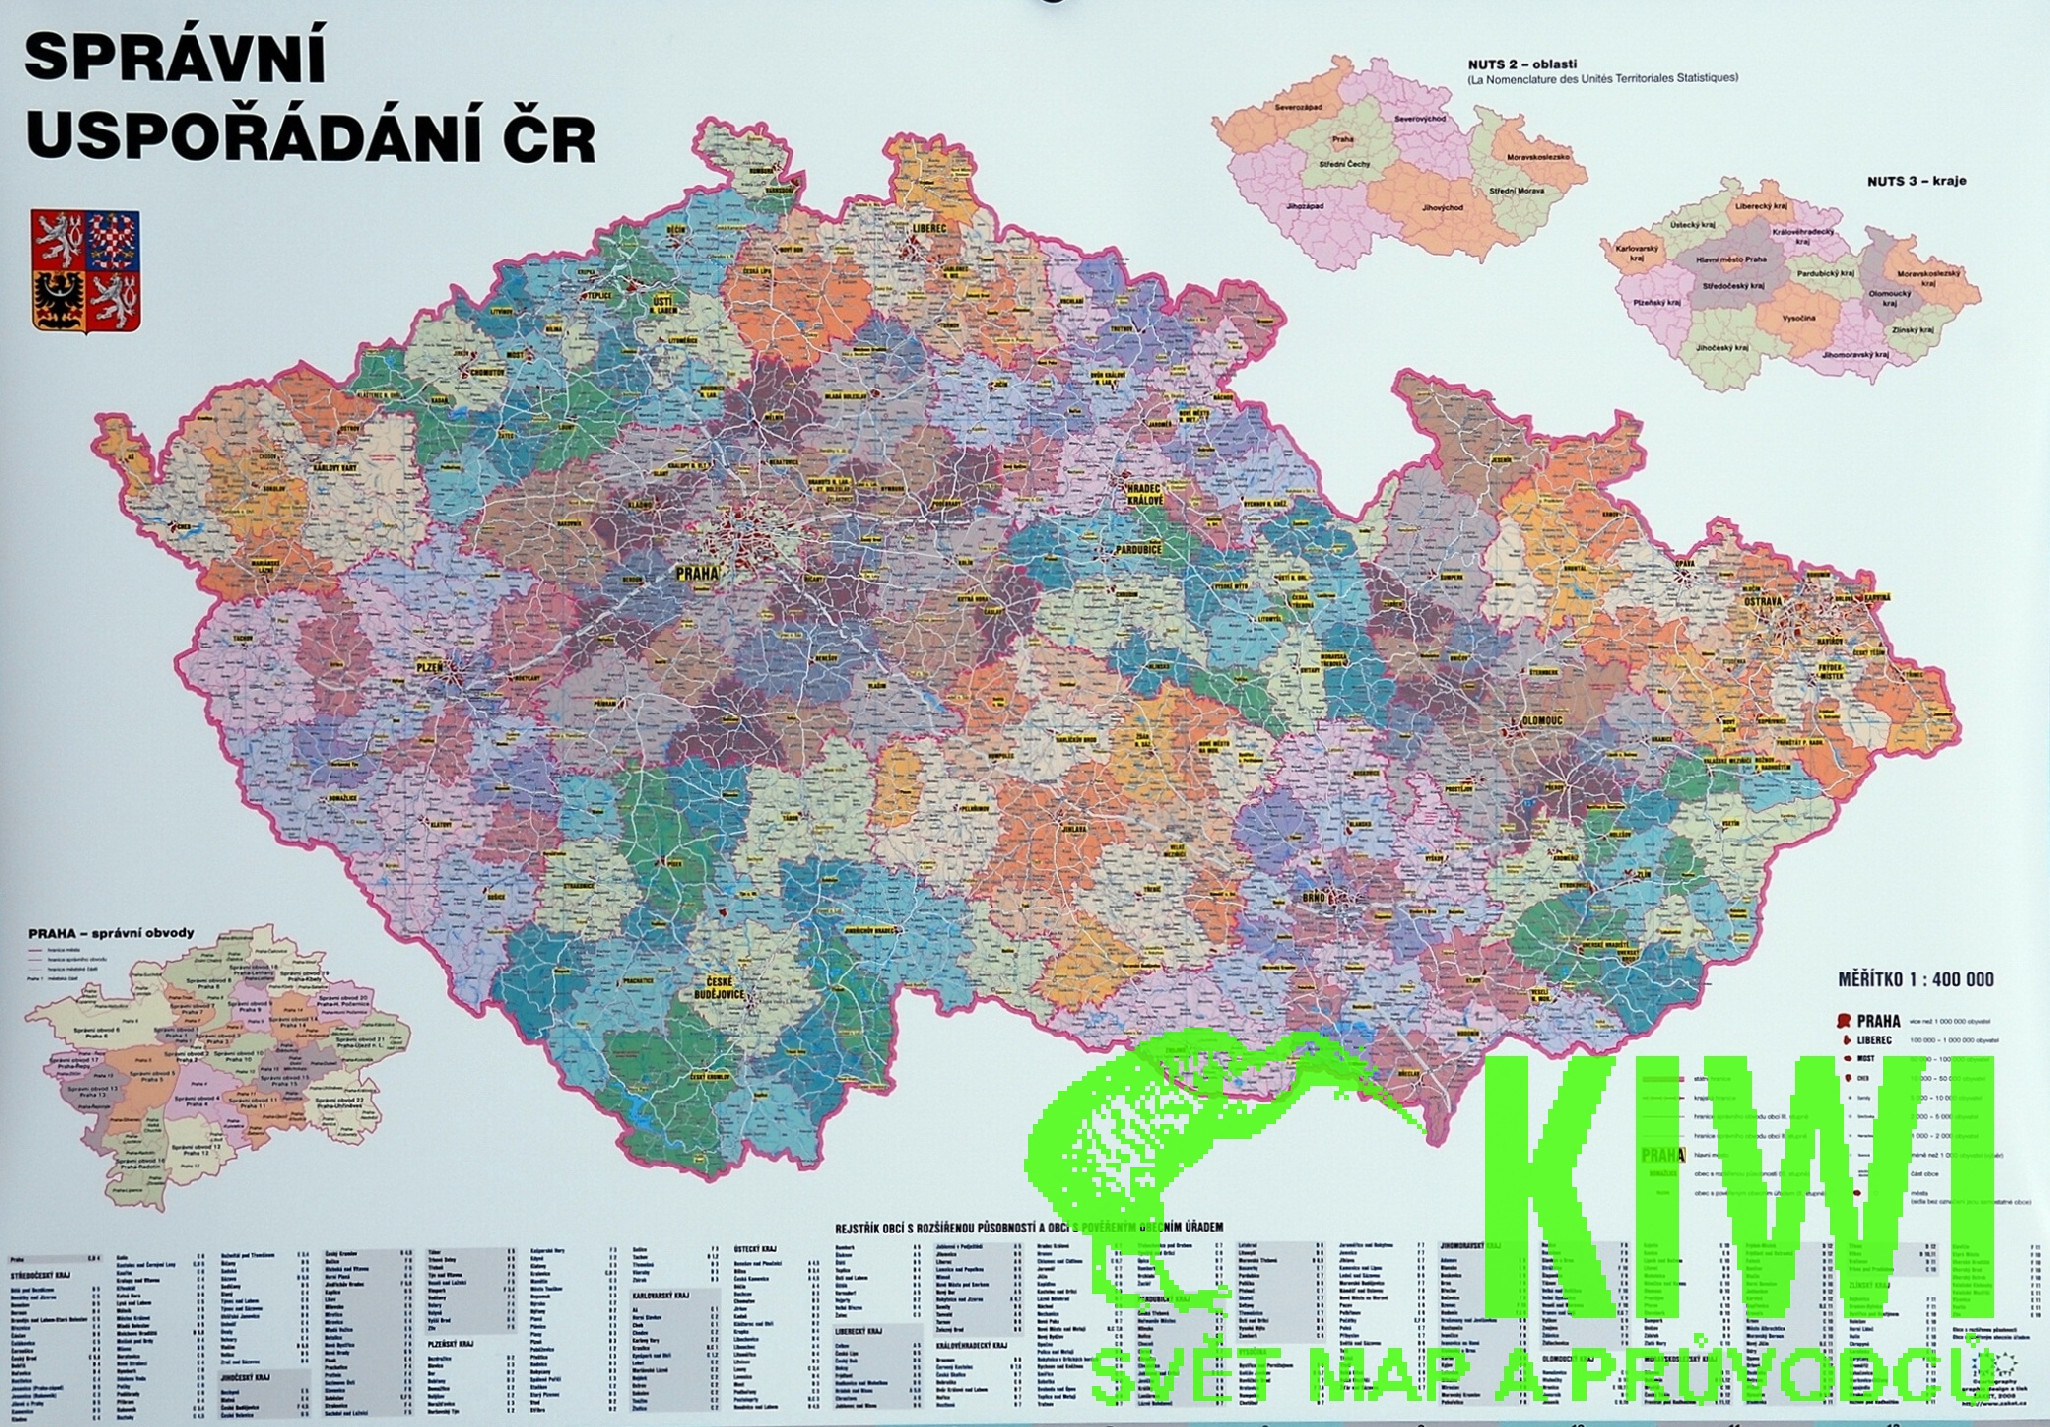 Žaket vydavatelství nástěnná mapa ČR 1:400 t. - admin.,137x97 cm - lišta